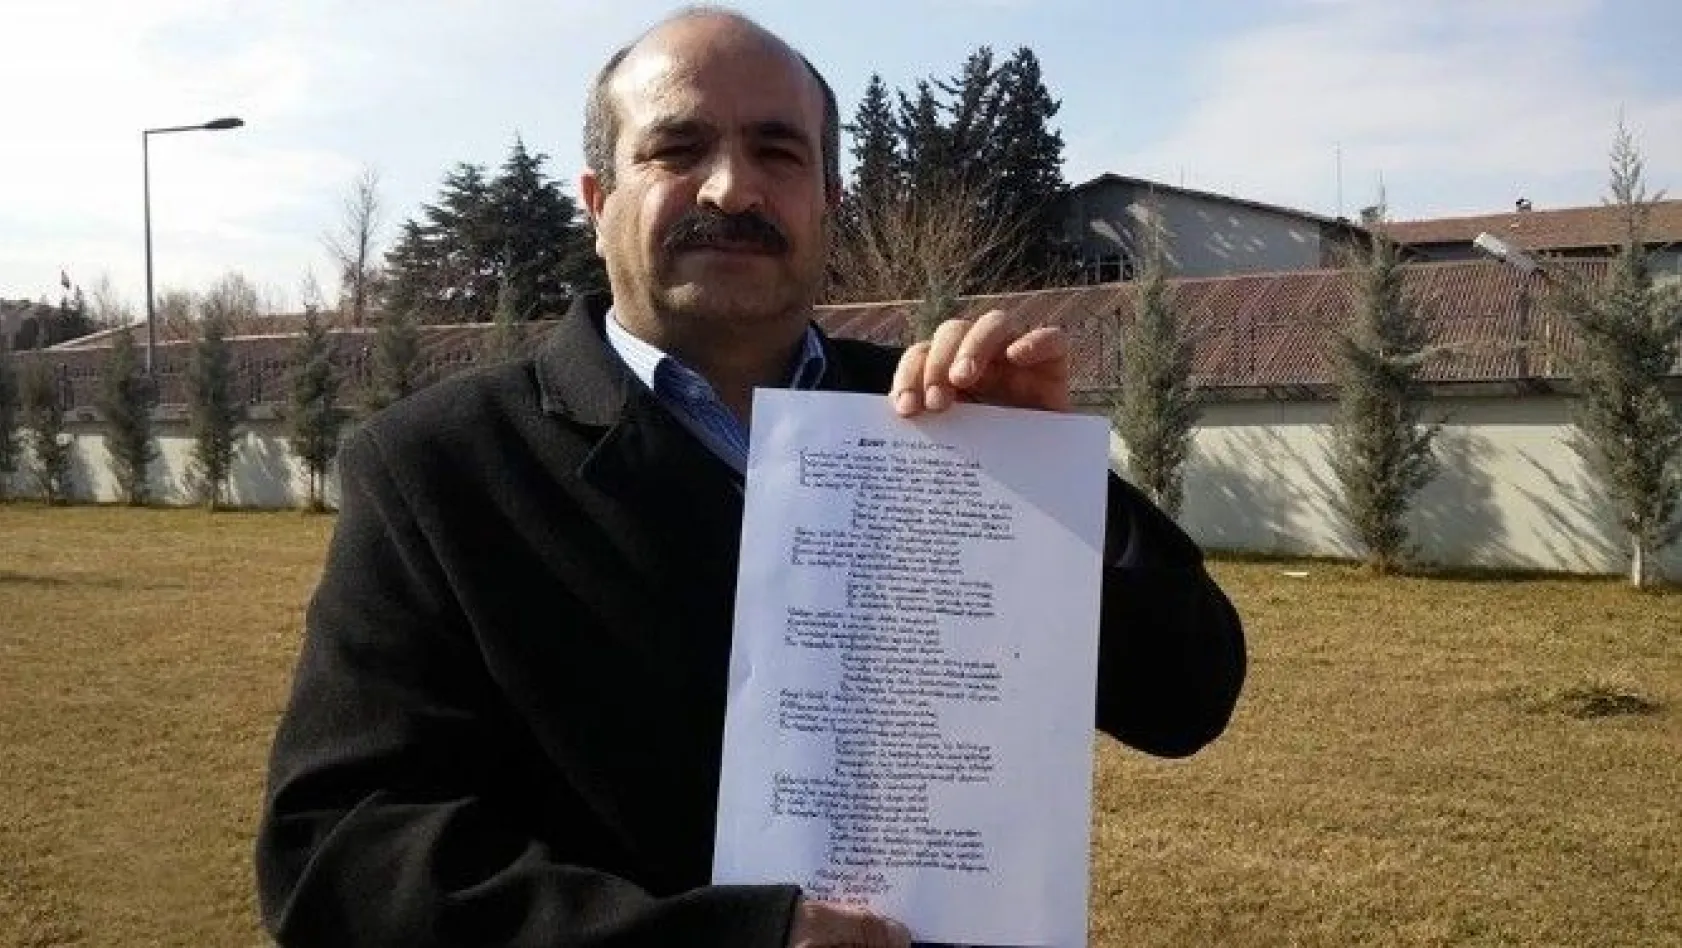 Uzun şiirleri ile tanınan şairden 'evet' kampanyasına destek
